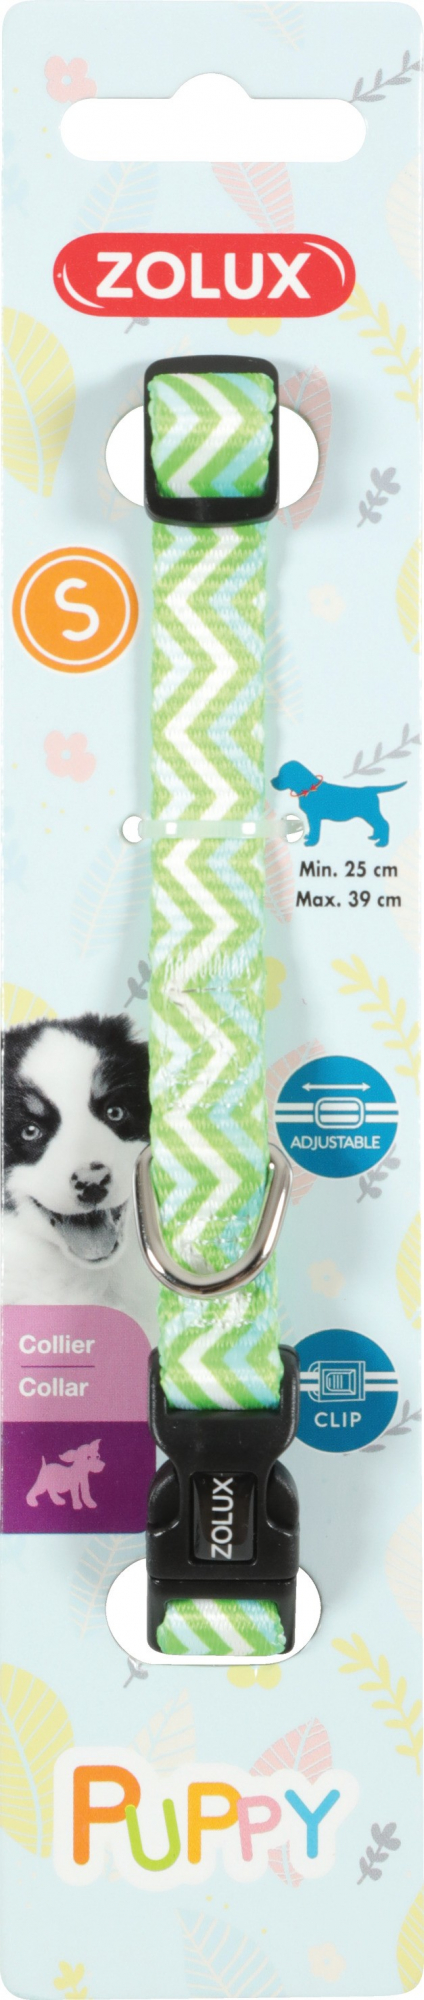 Coleira de nylon ajustável cachorro Puppy Pixie - verde